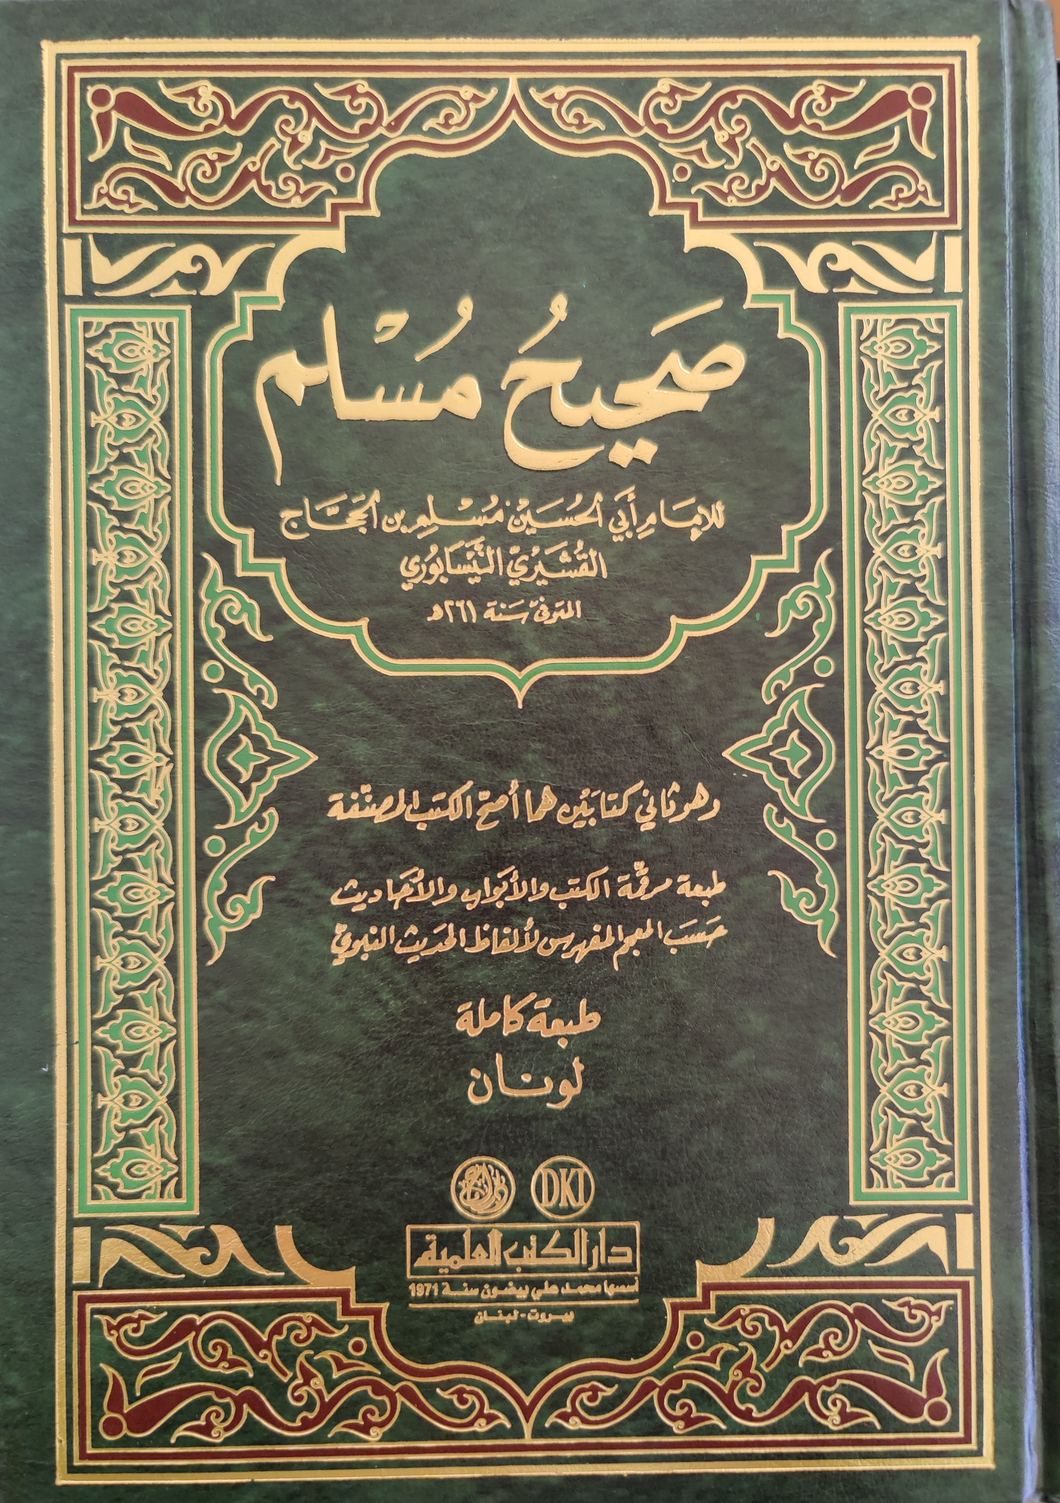 Sahih Muslim (Arabic)